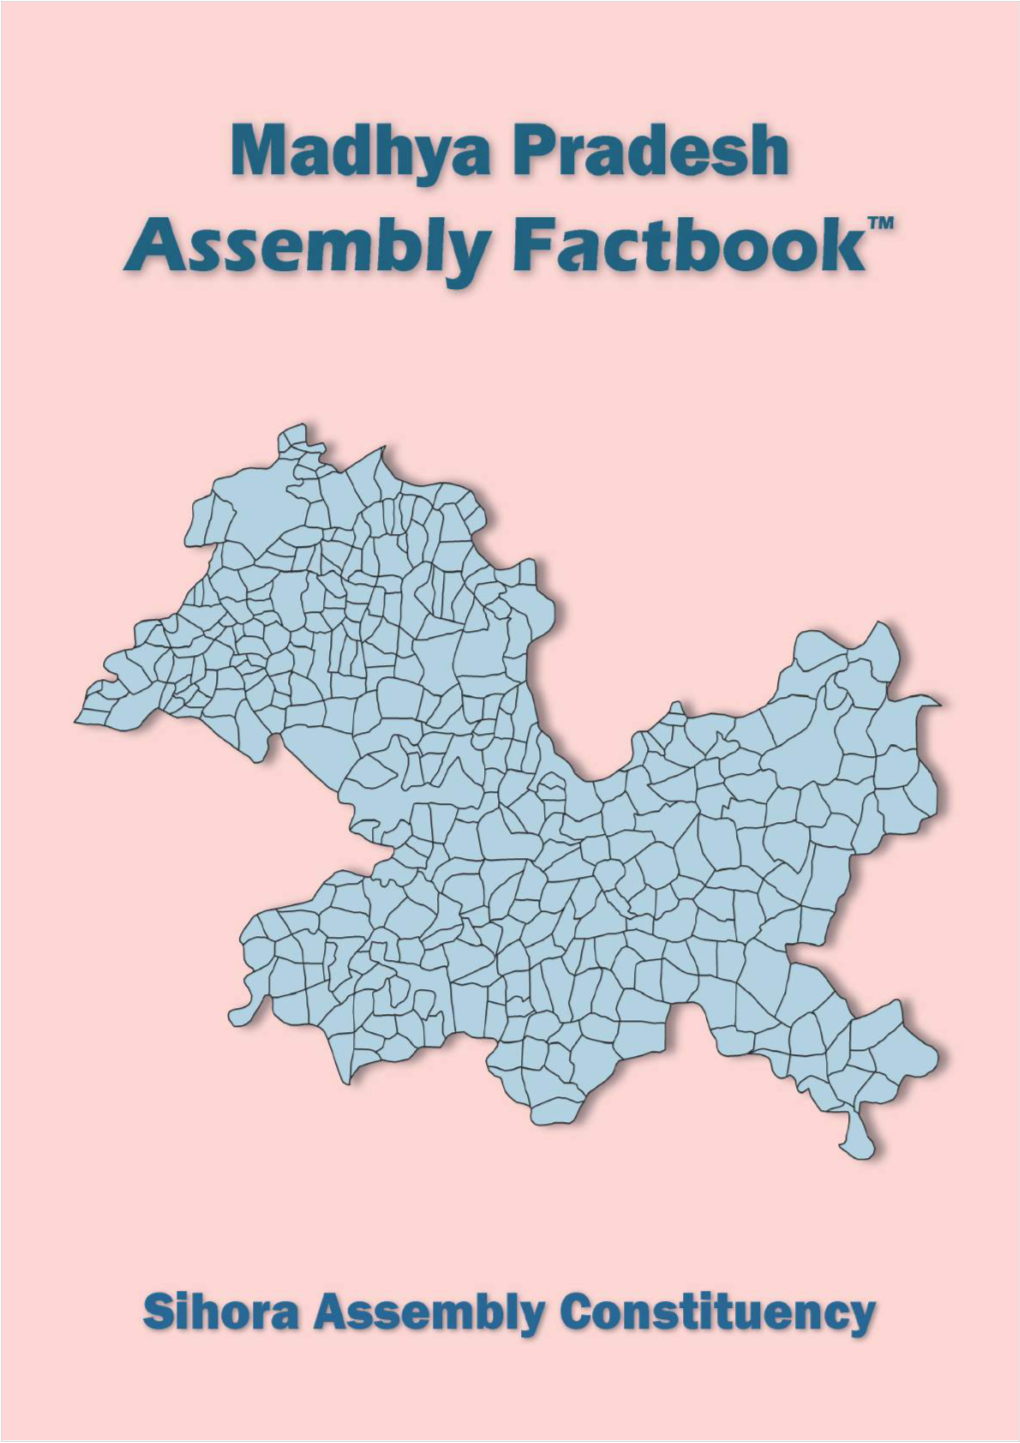 Sihora Assembly Madhya Pradesh Factbook